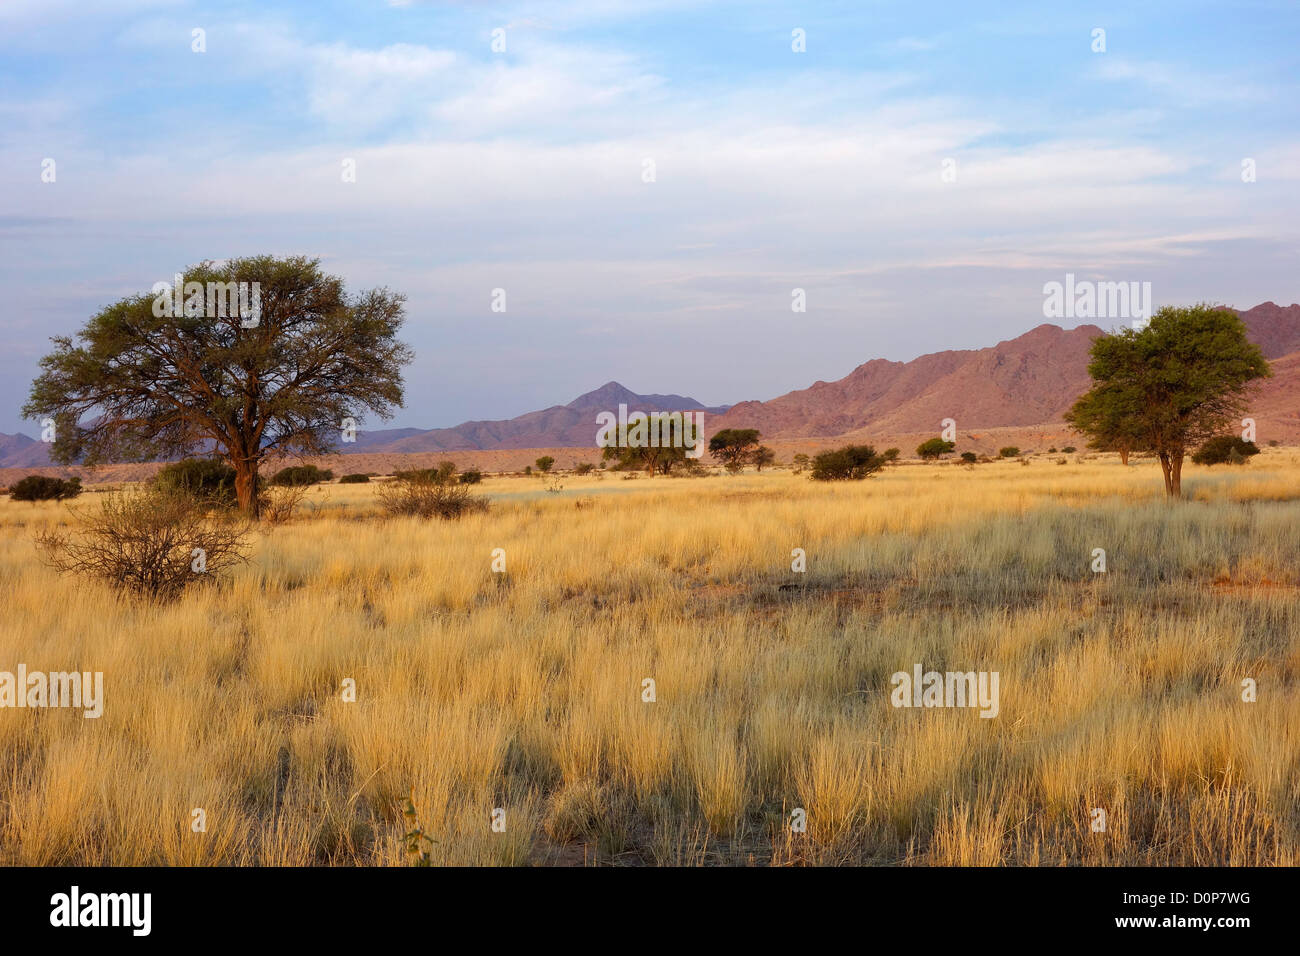 Paysage désertique avec les herbes et les arbres d'Acacia africains en fin d'après-midi, lumière, Namibie, Afrique du Sud Banque D'Images